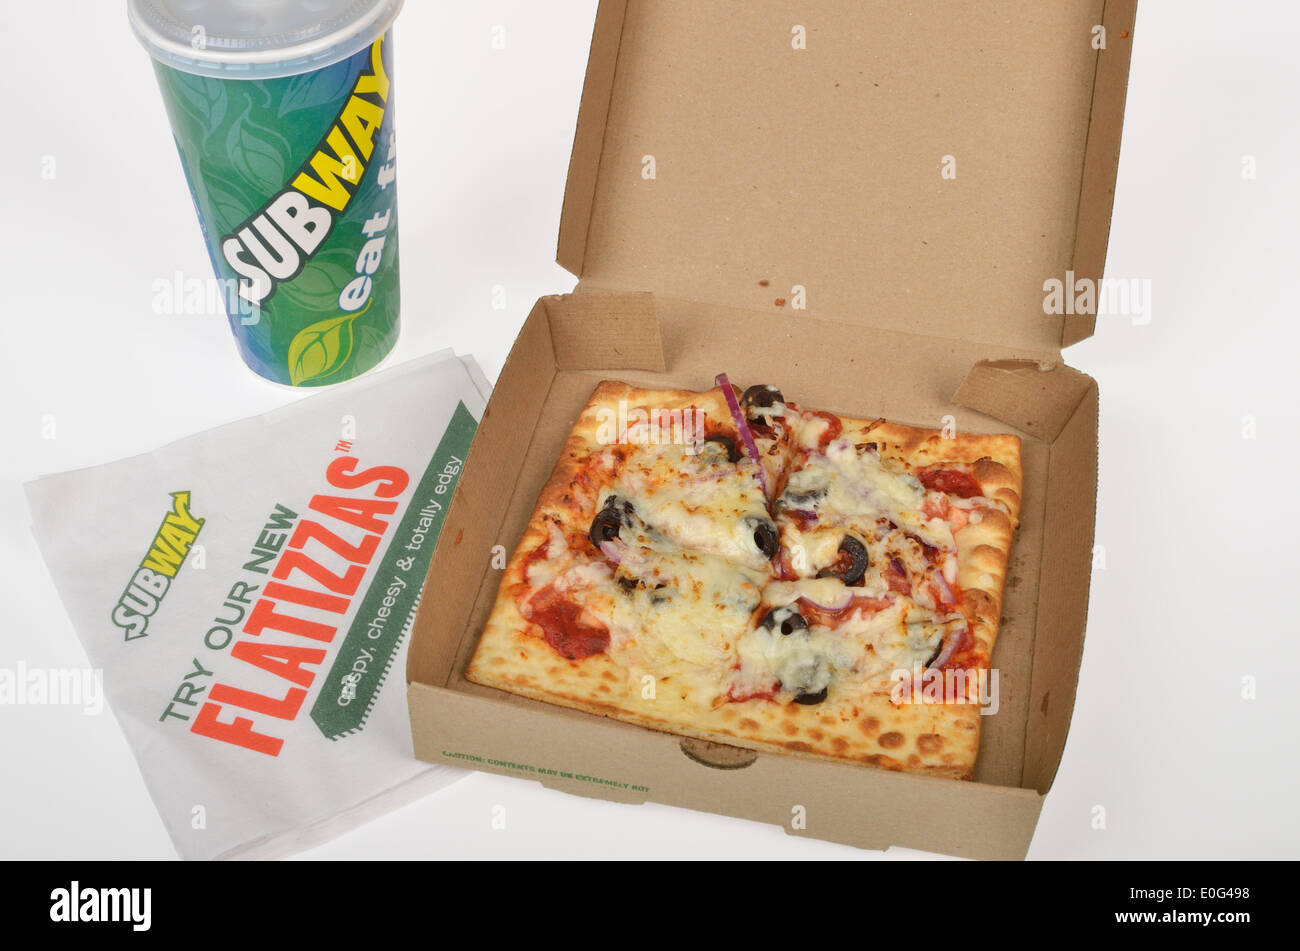 U-Bahn Fast-Food Flatizza quadratische Pizza mit Gemüse Belag im Karton herausnehmen Box auf weißem Hintergrund. USA Stockfoto